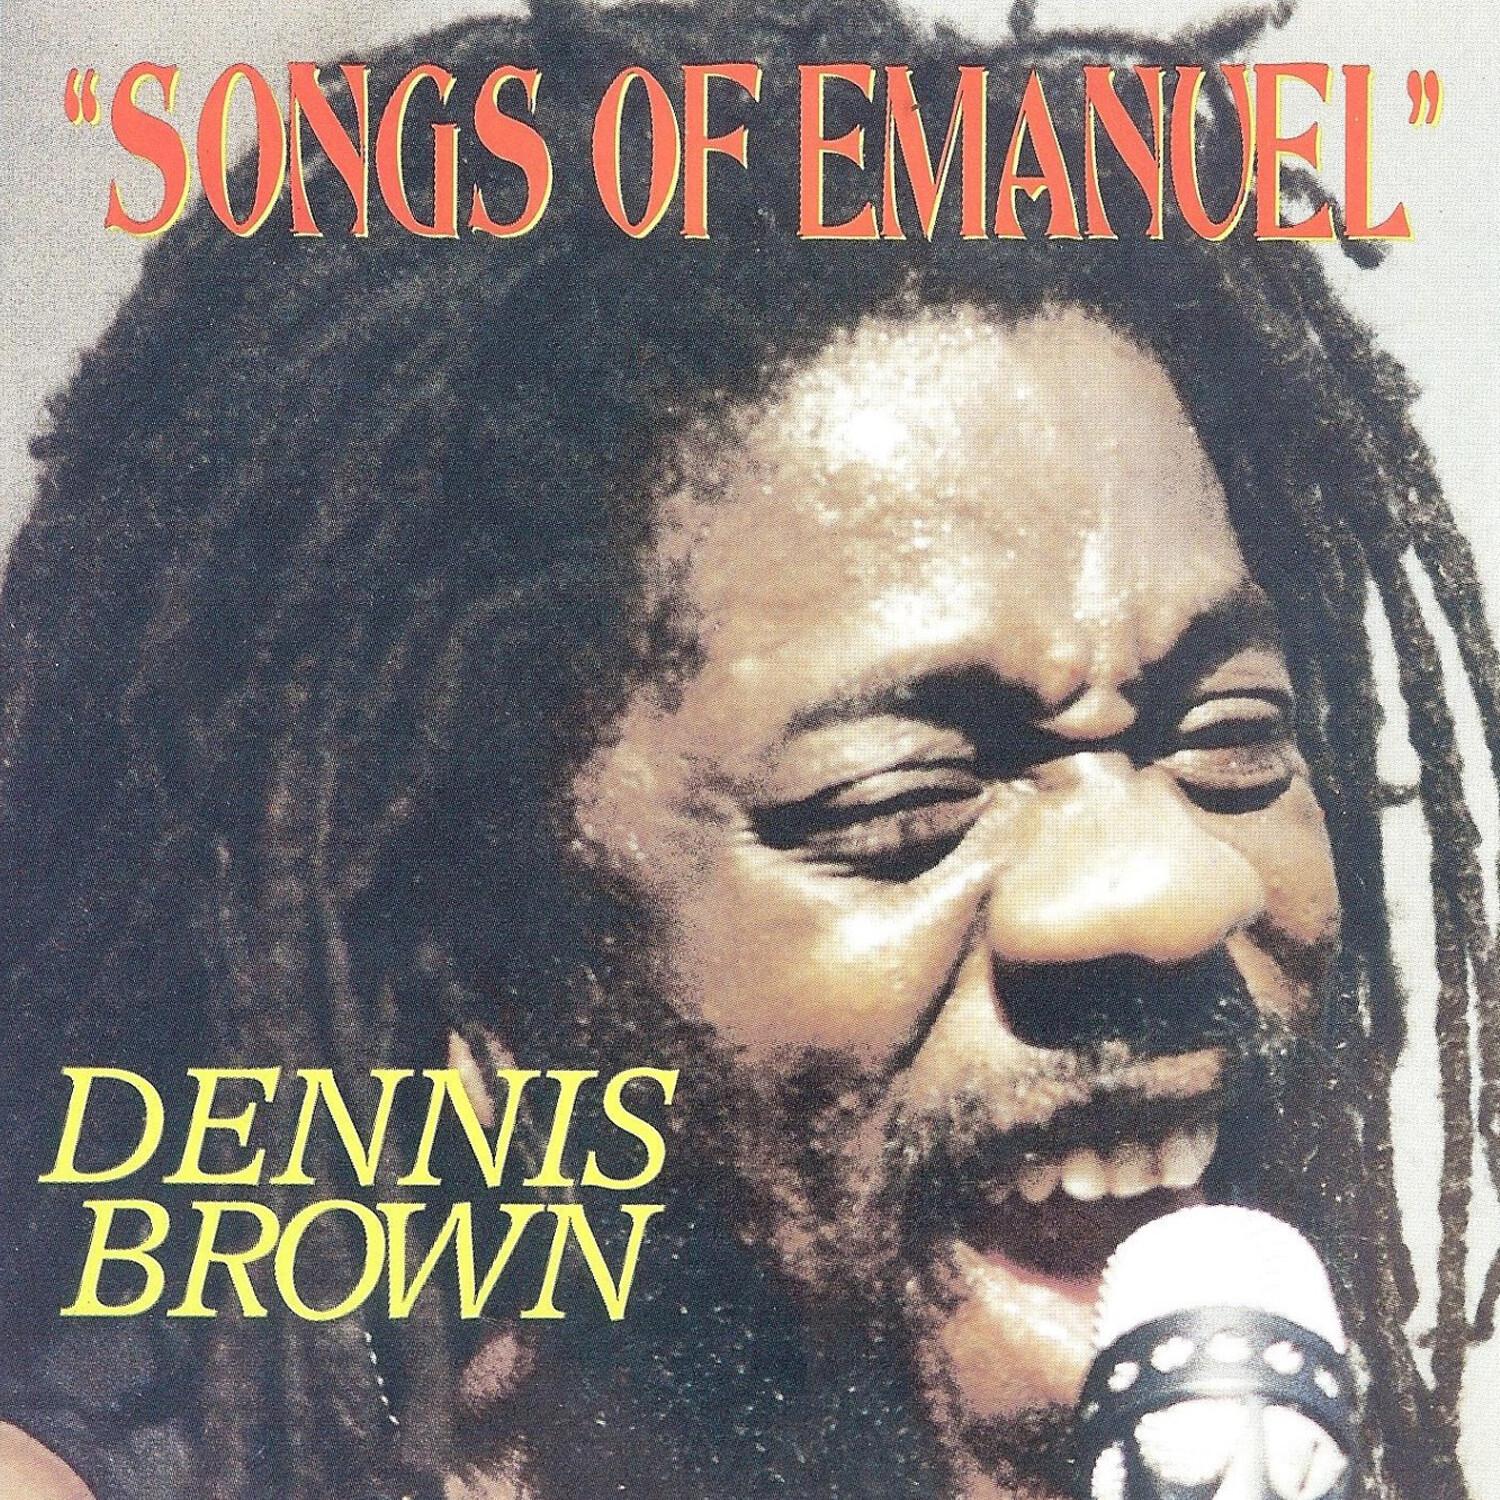 Songs of Emmanuel